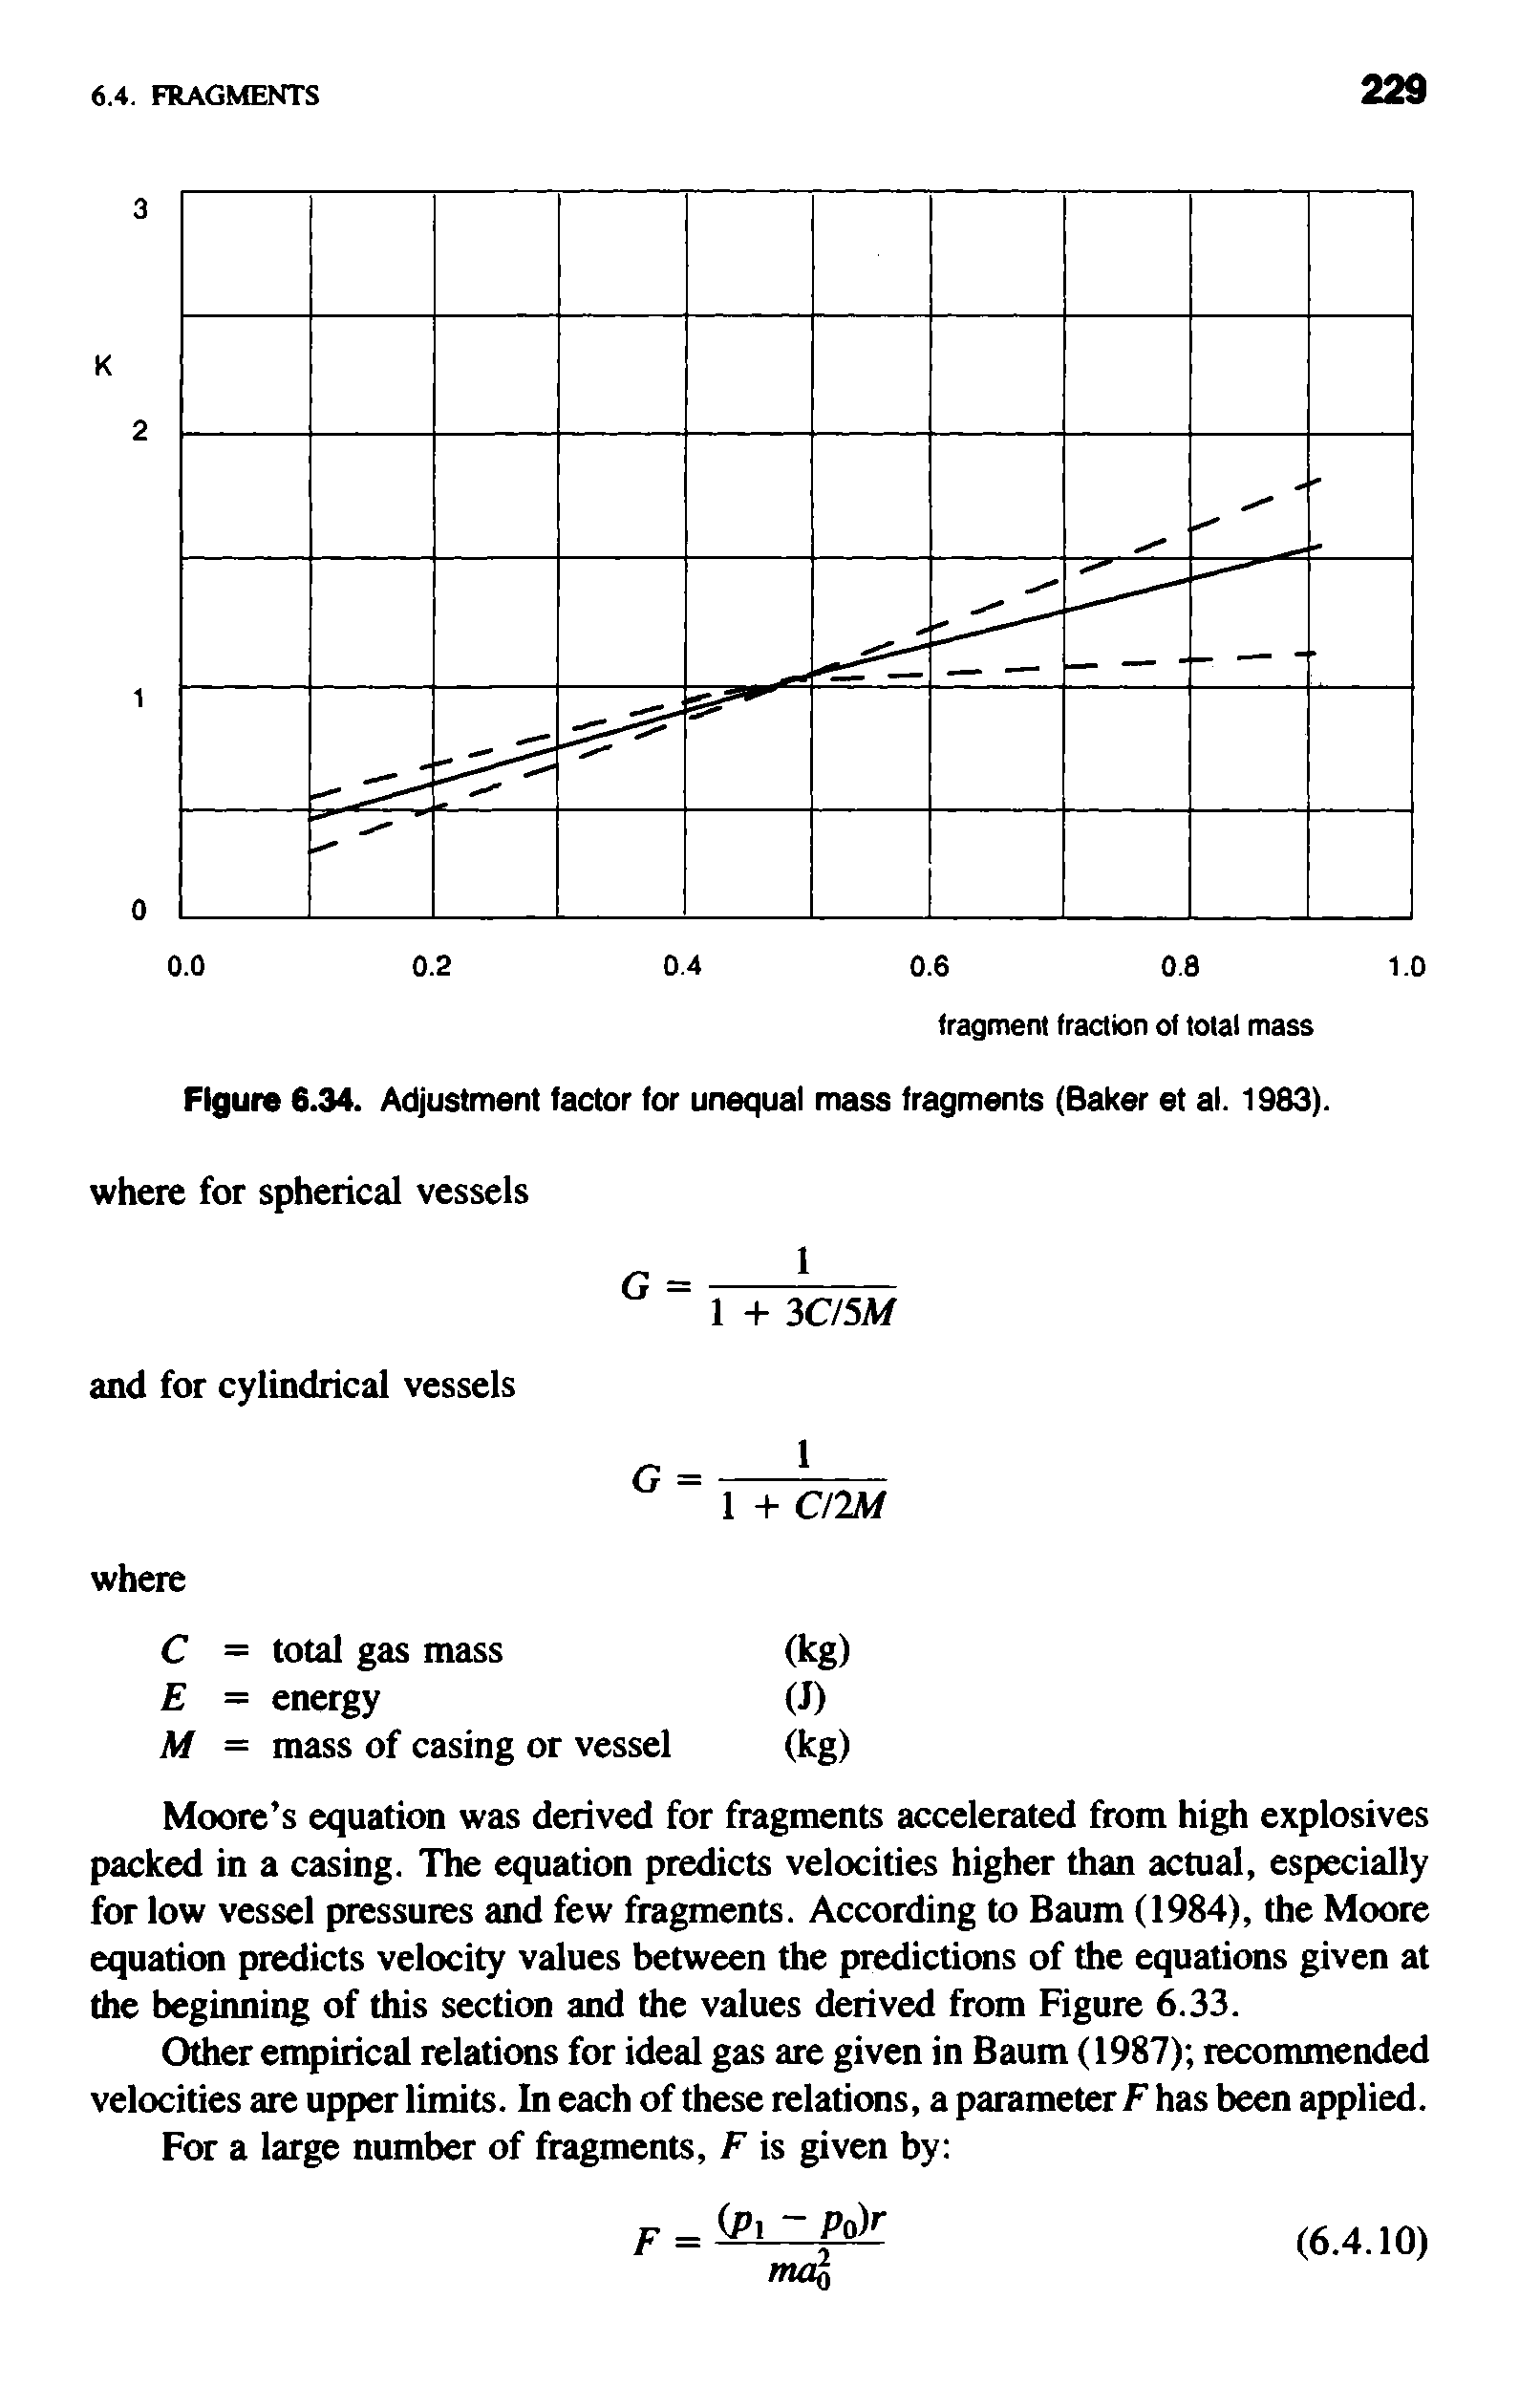 Figure 6.34. Adjustment factor for unequal mass fragments (Baker et al. 1983).